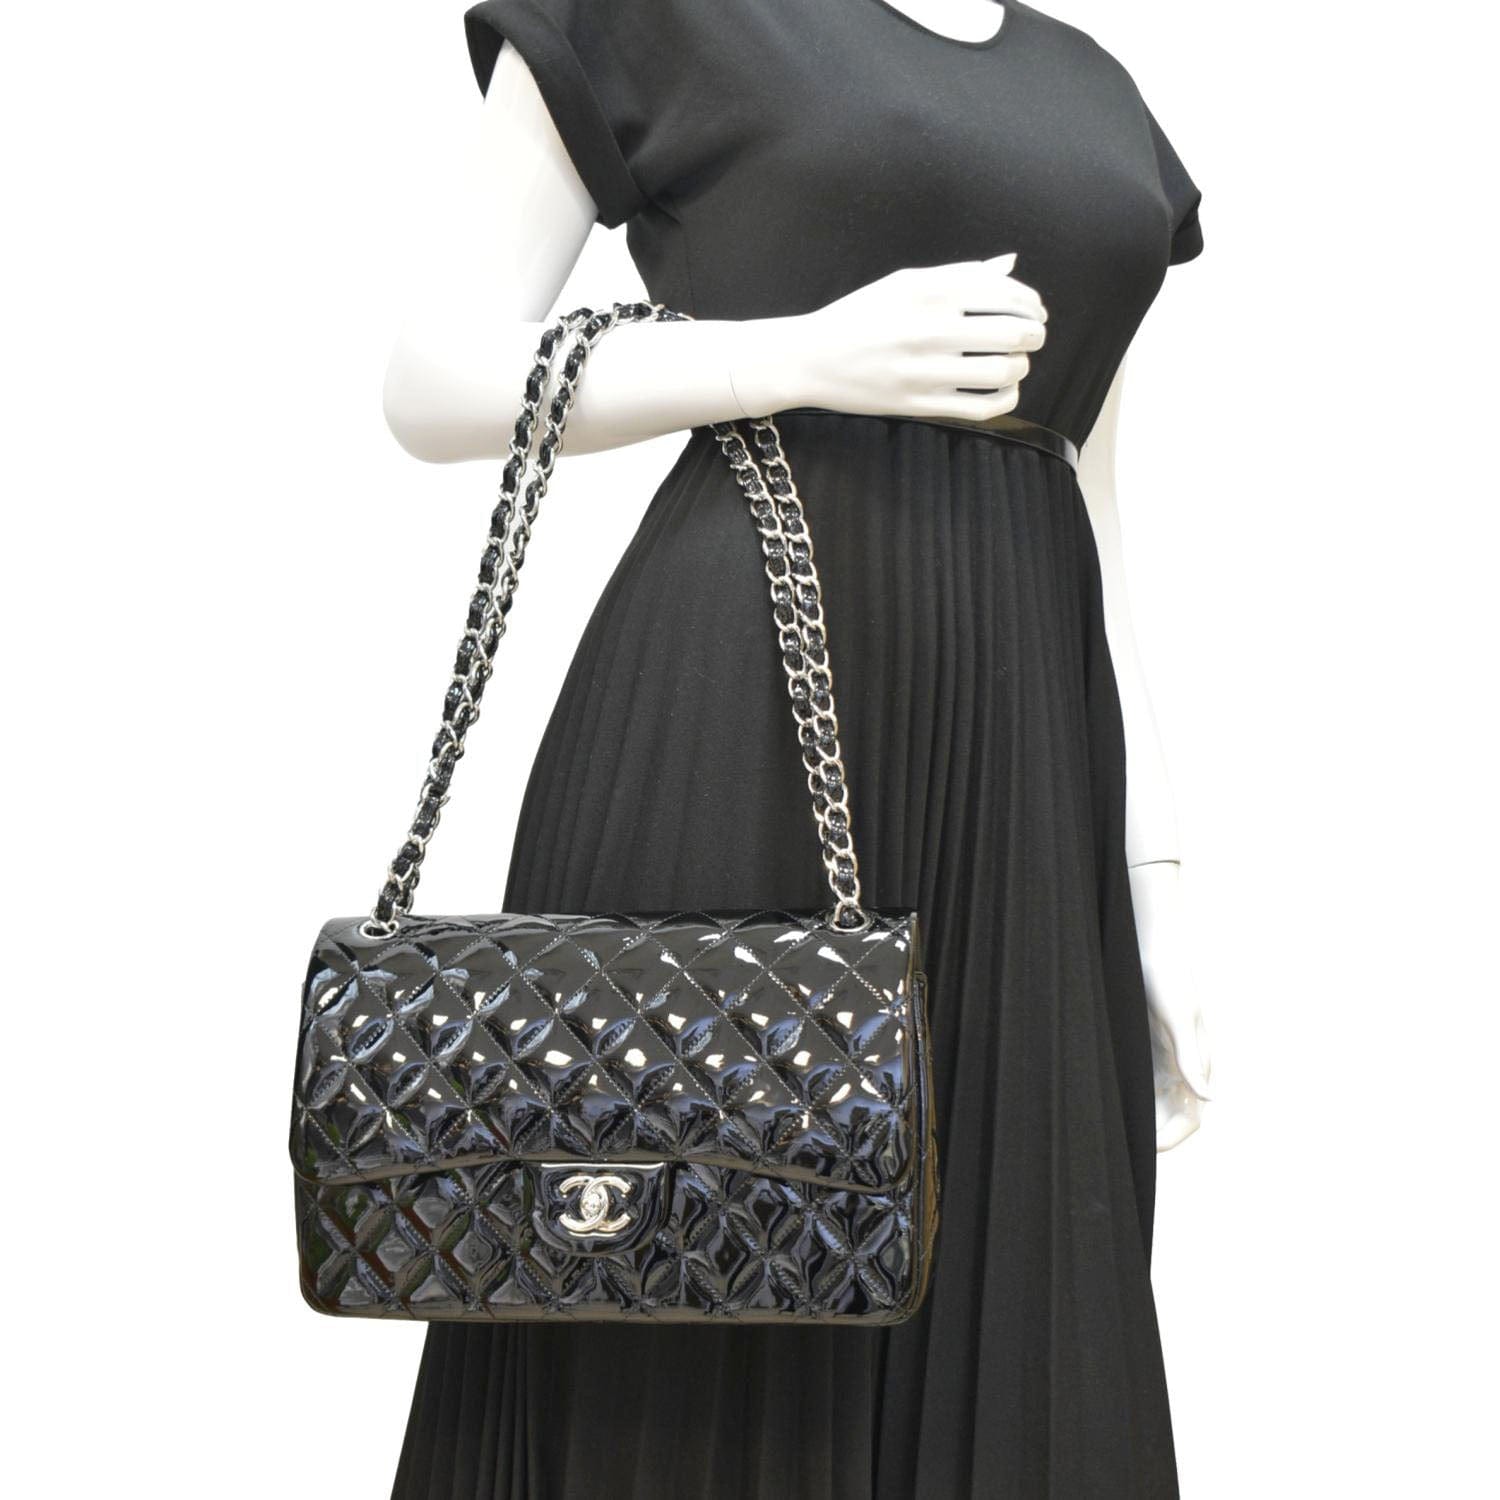 Chanel Classic Medium Double Flap Patent Leather Shoulder Bag Black